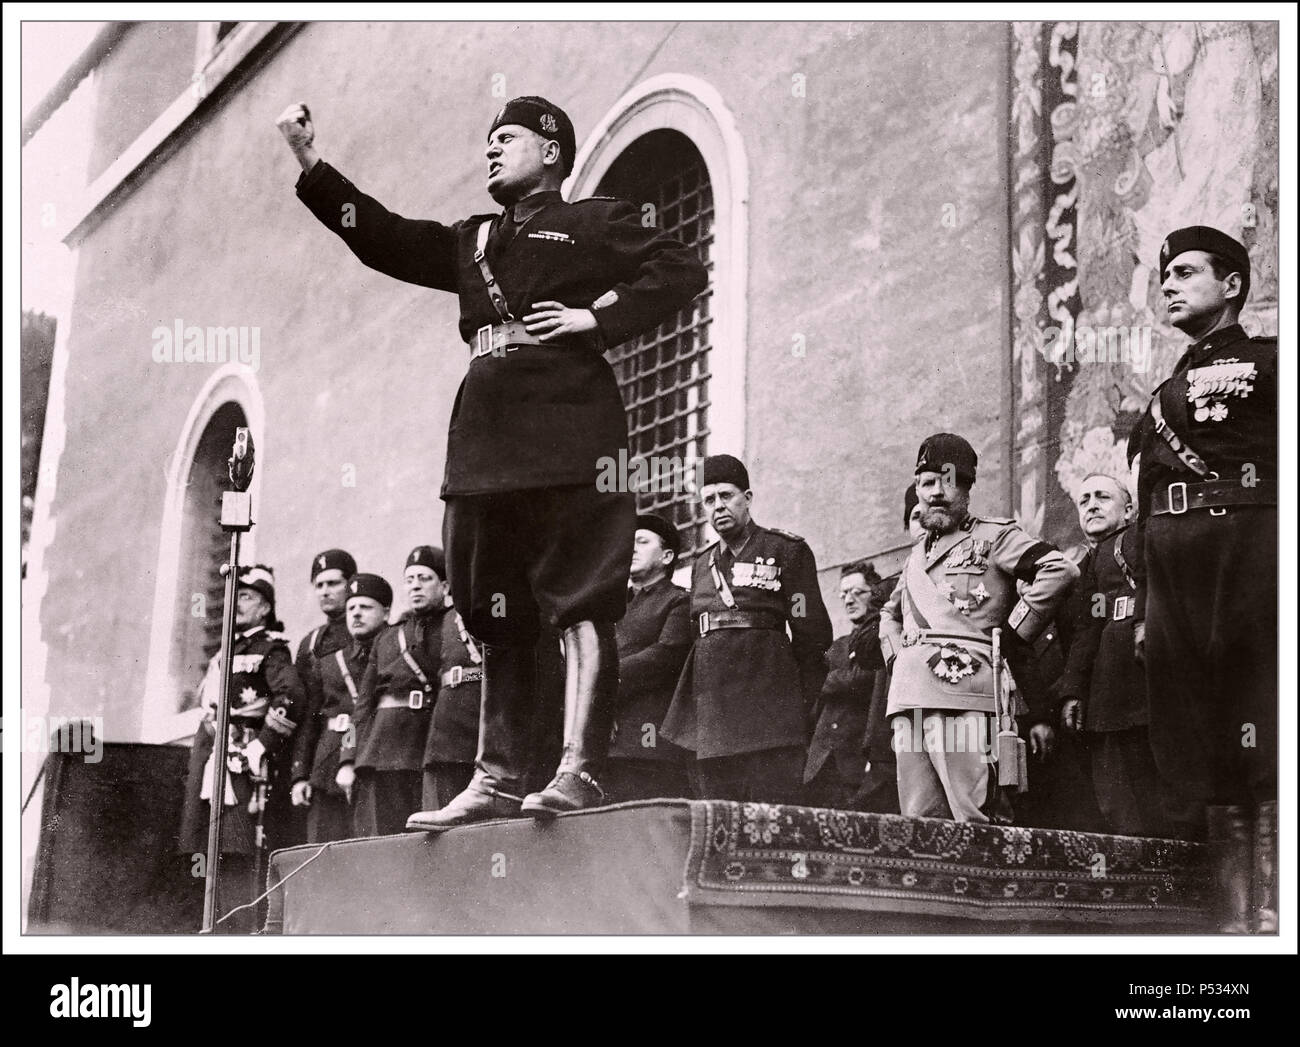 IL DUCE MUSSOLINI italienischen faschistischen Diktator Benito Mussolini eine leidenschaftliche Rede in Rom Italien Stockfoto